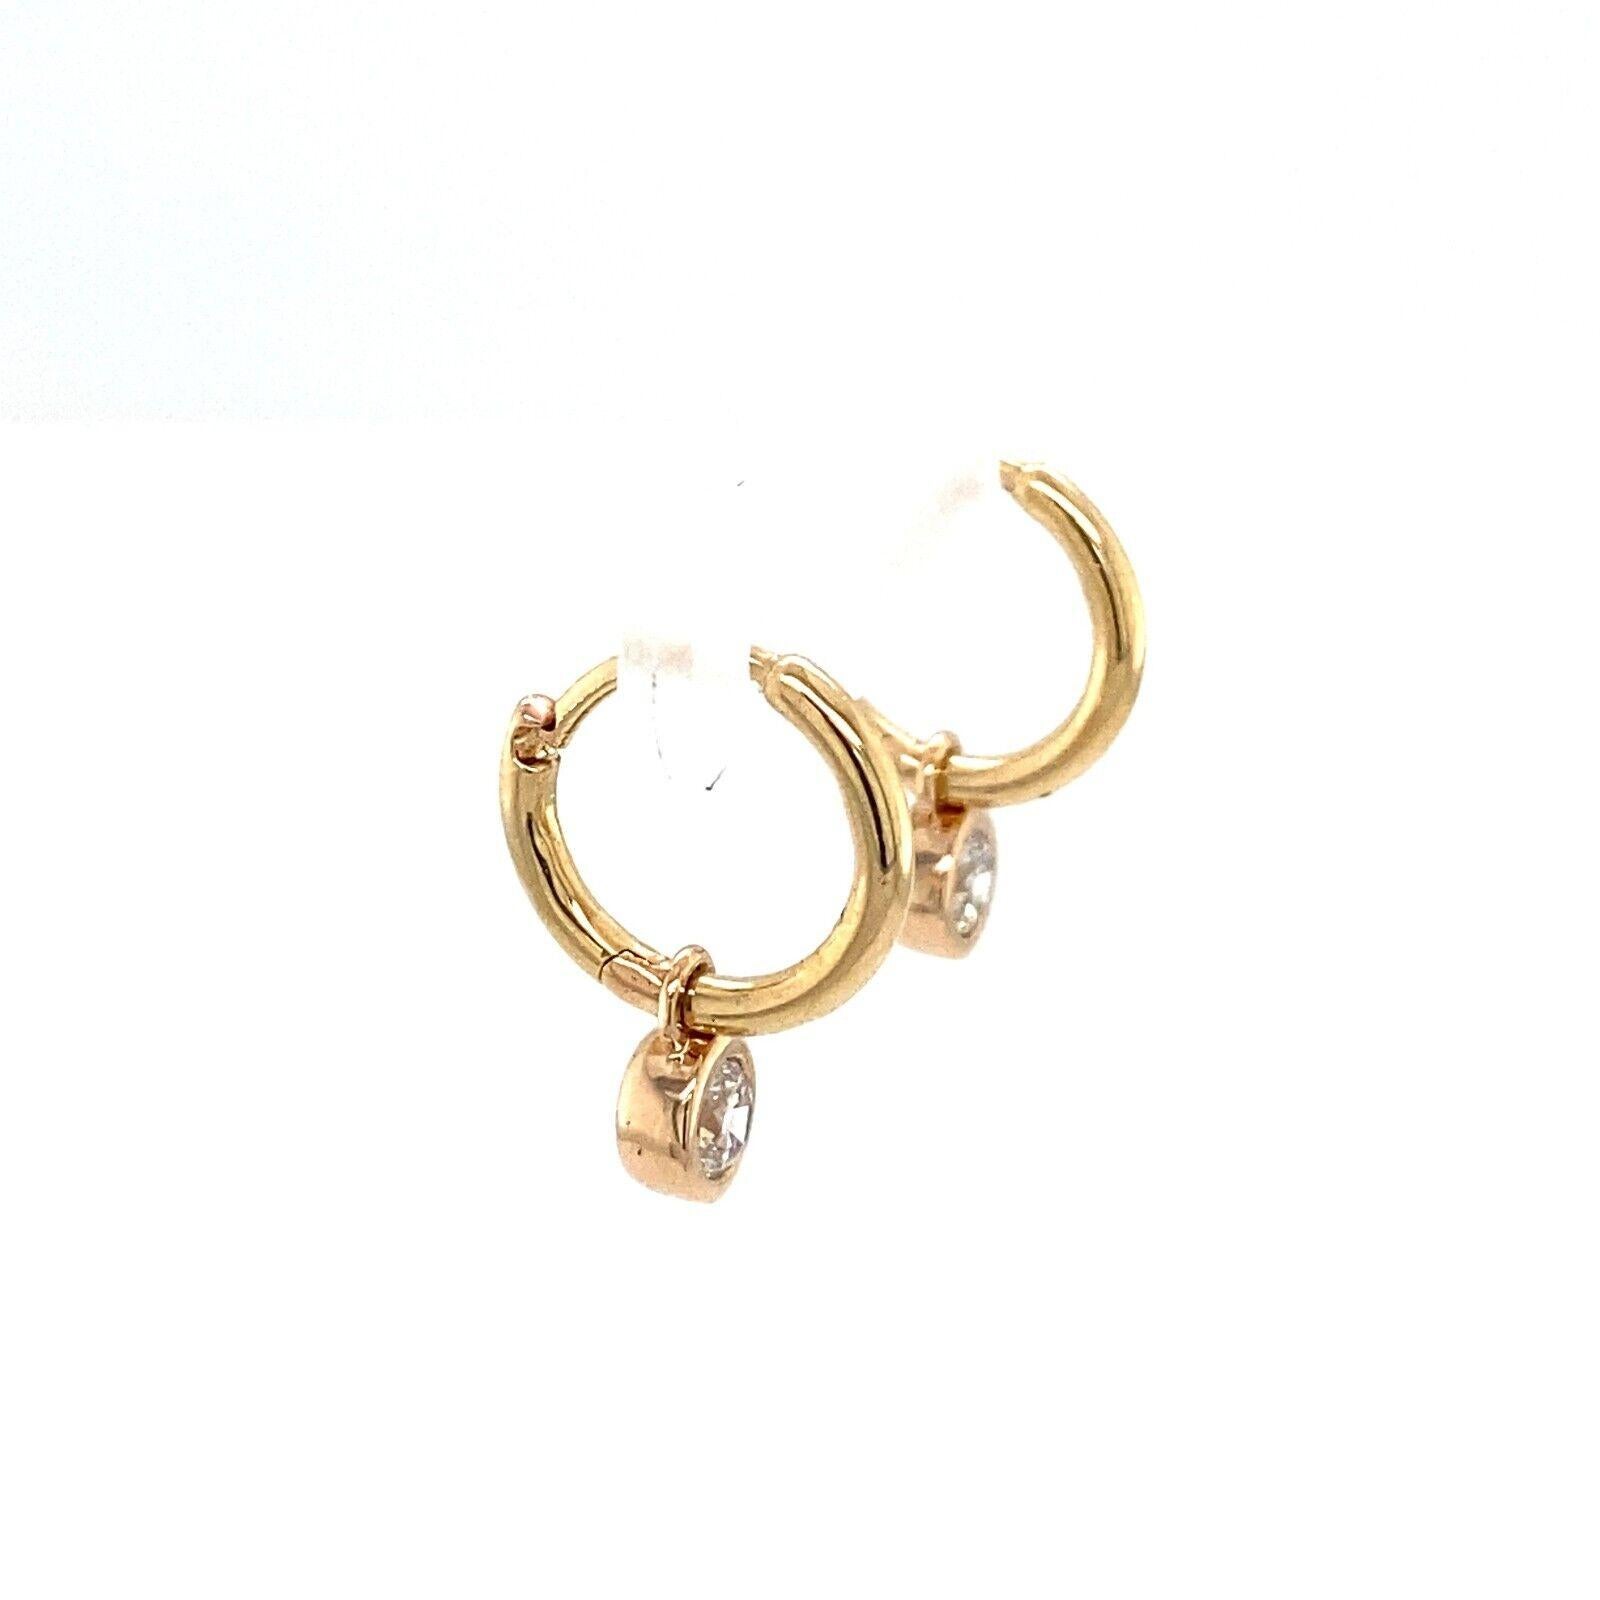 Diese atemberaubenden Ohrringe sind das perfekte Paar, um Ihre Sammlung zu ergänzen. Diese 14ct Gelbgold Reif Ohrringe haben insgesamt 0,25ct Runde Brillantschliff Diamanten ist in einer Lünette Fassung und an den Reif glatt Ohrring